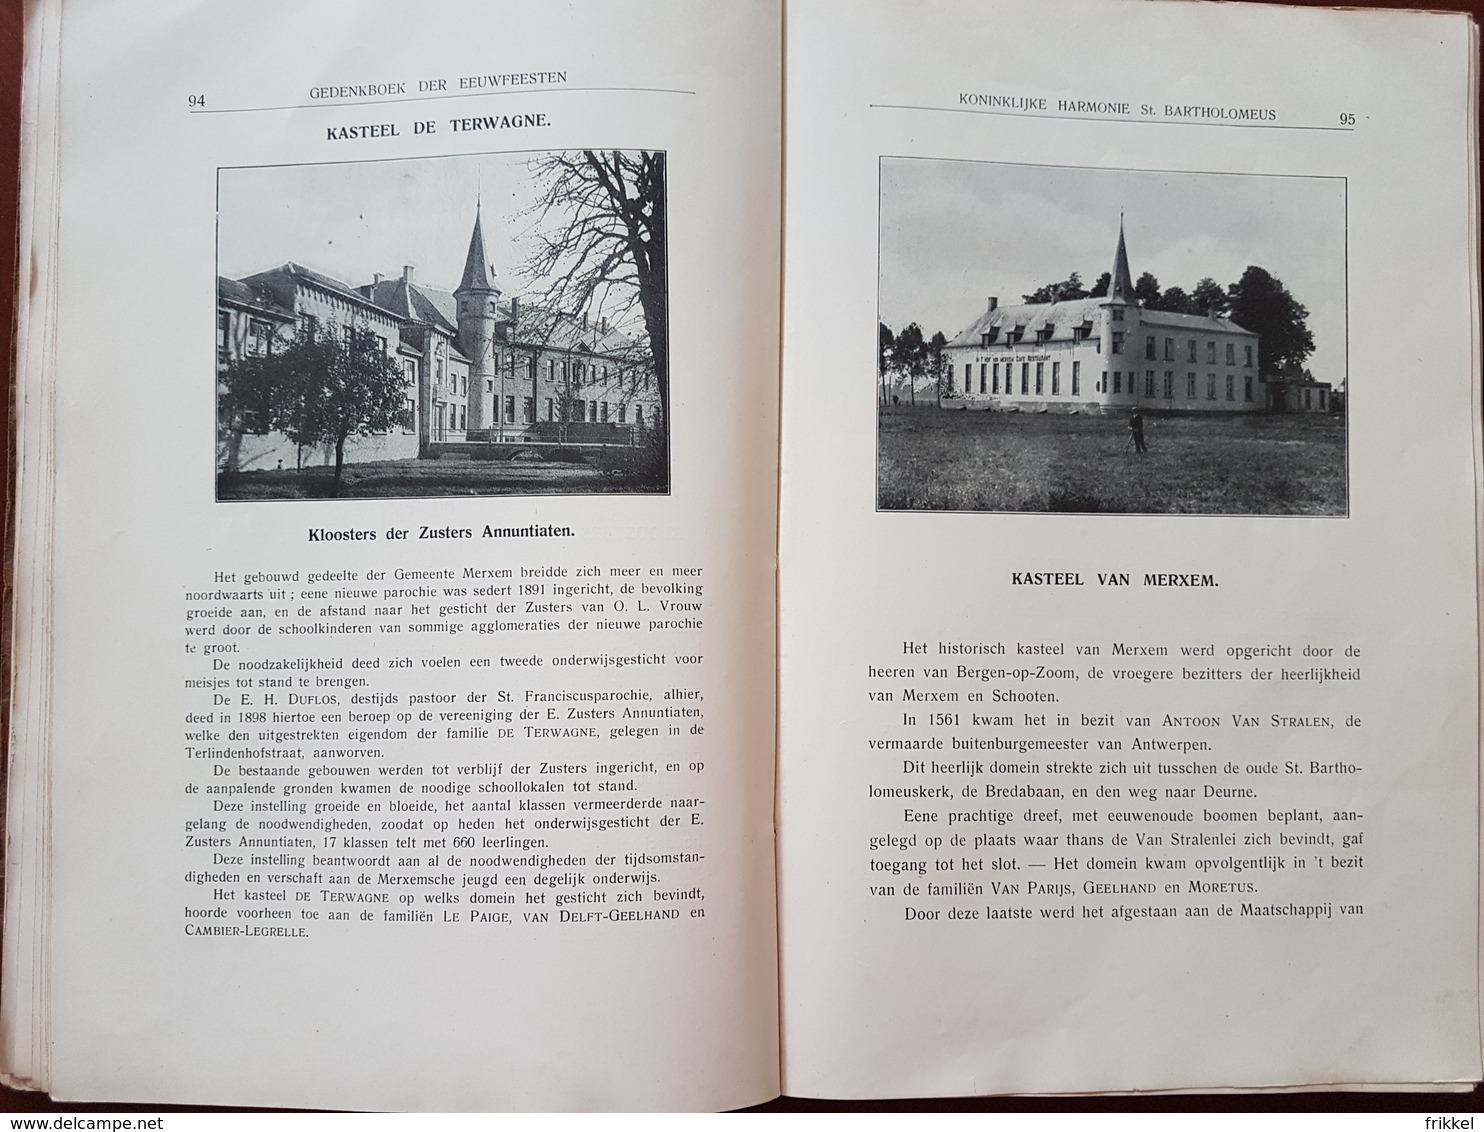 Boek: Merksem 1926 Gedenkboek Eeuwfeesten Harmonie St Bartholomeus Merxem Voorheen en Nu (287 blz ; 16 x 25 cm)